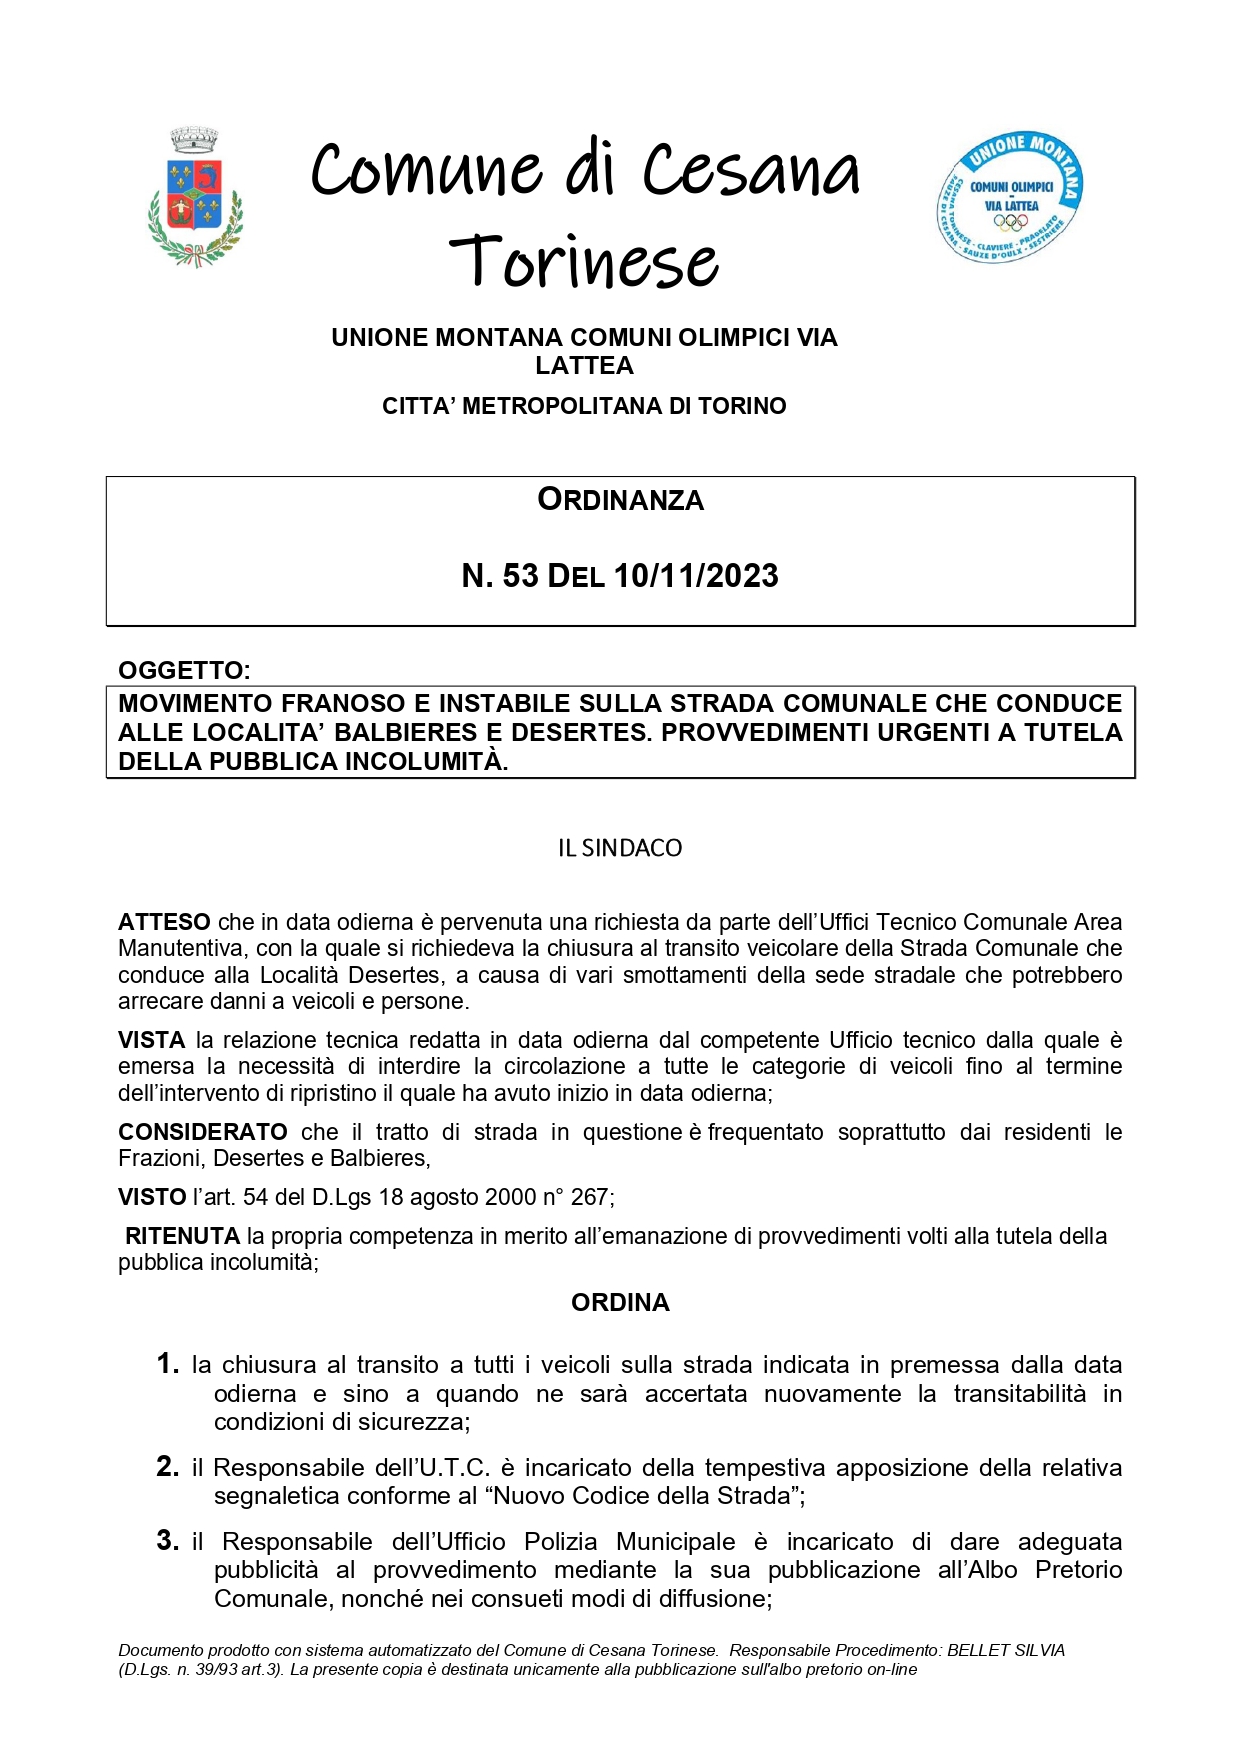 Ordinanza n. 53 del 10/11/2023 – Chiusura al transito strada comunale per le località Balbieres e Desertes.